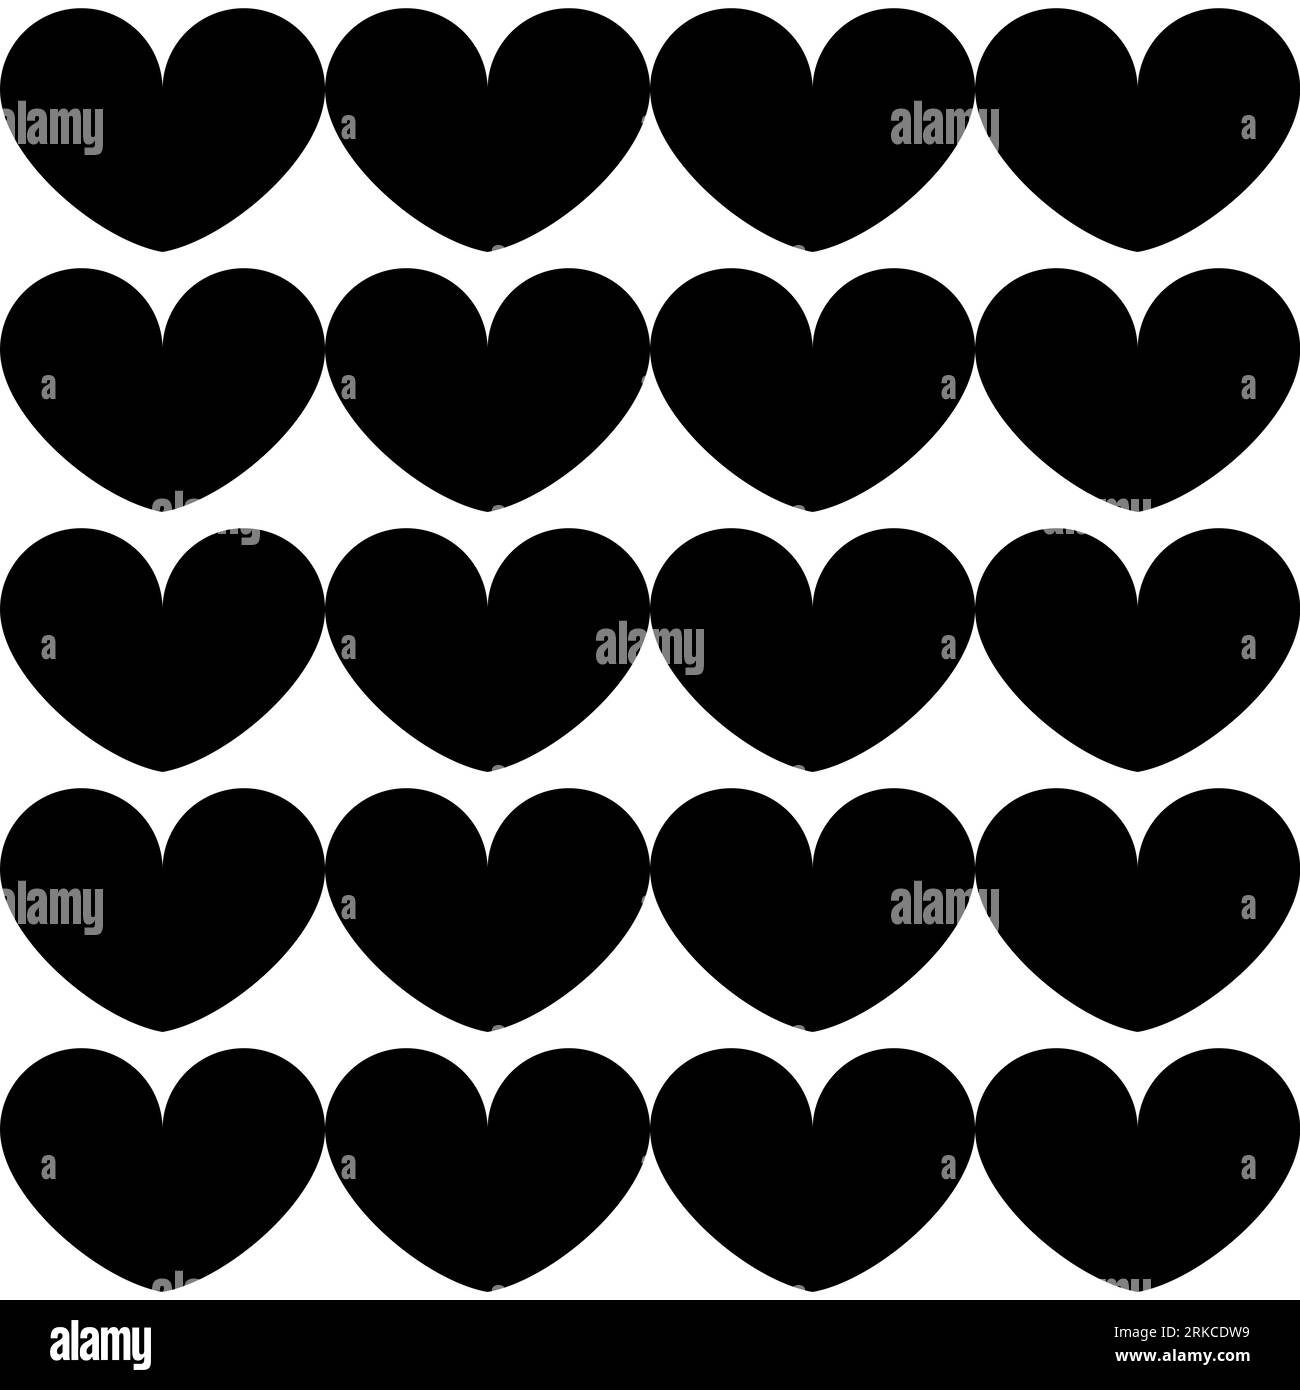 Patrón sin fisuras con motivos geométricos en blanco y negro Foto de stock